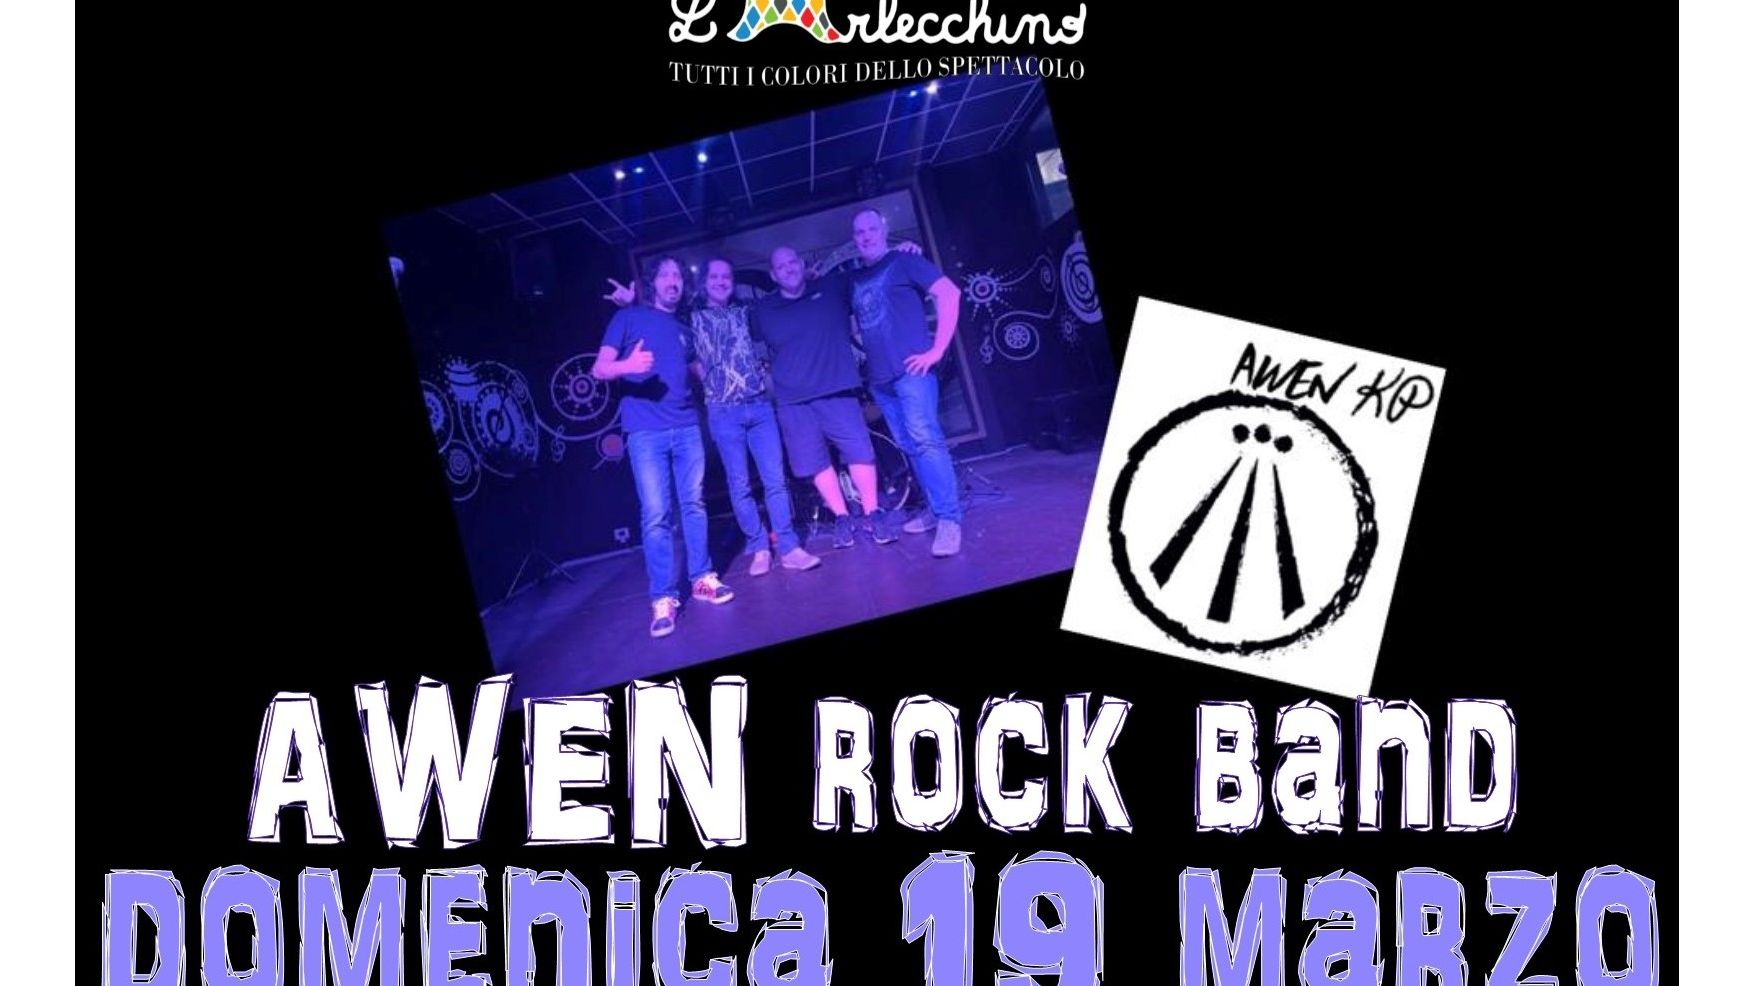 Awen rock band